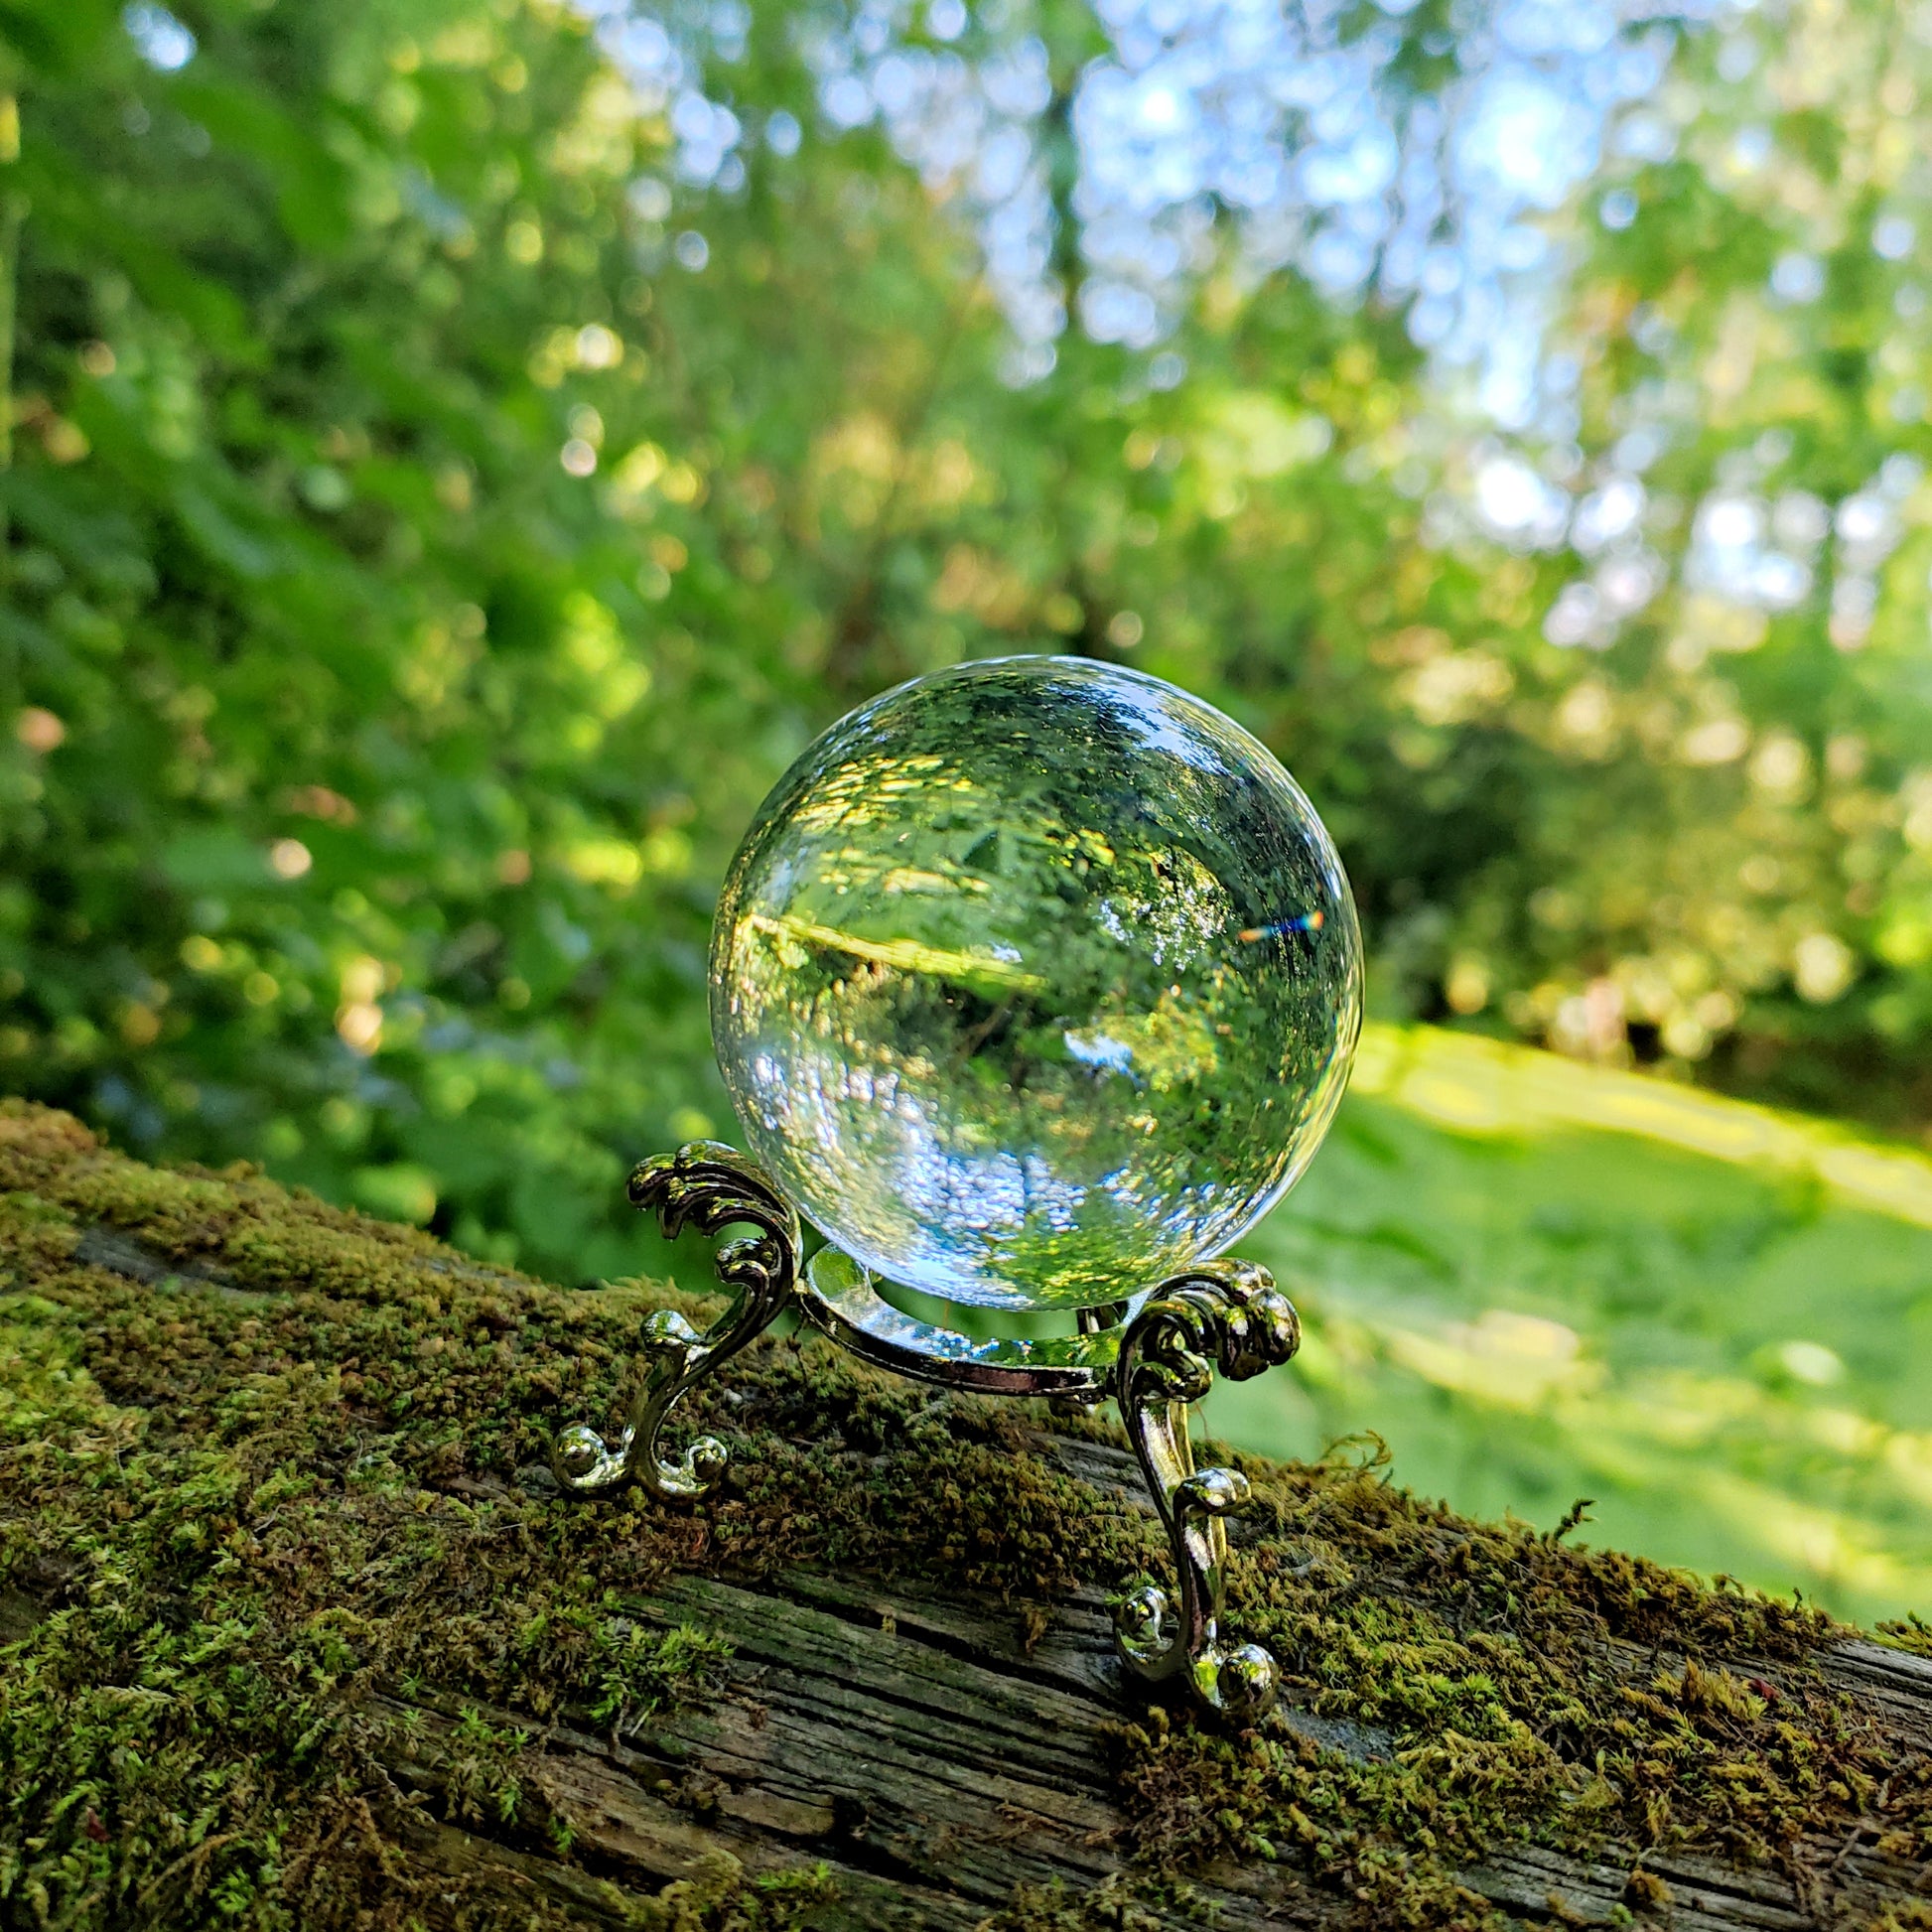 Boule de Cristal de Divination